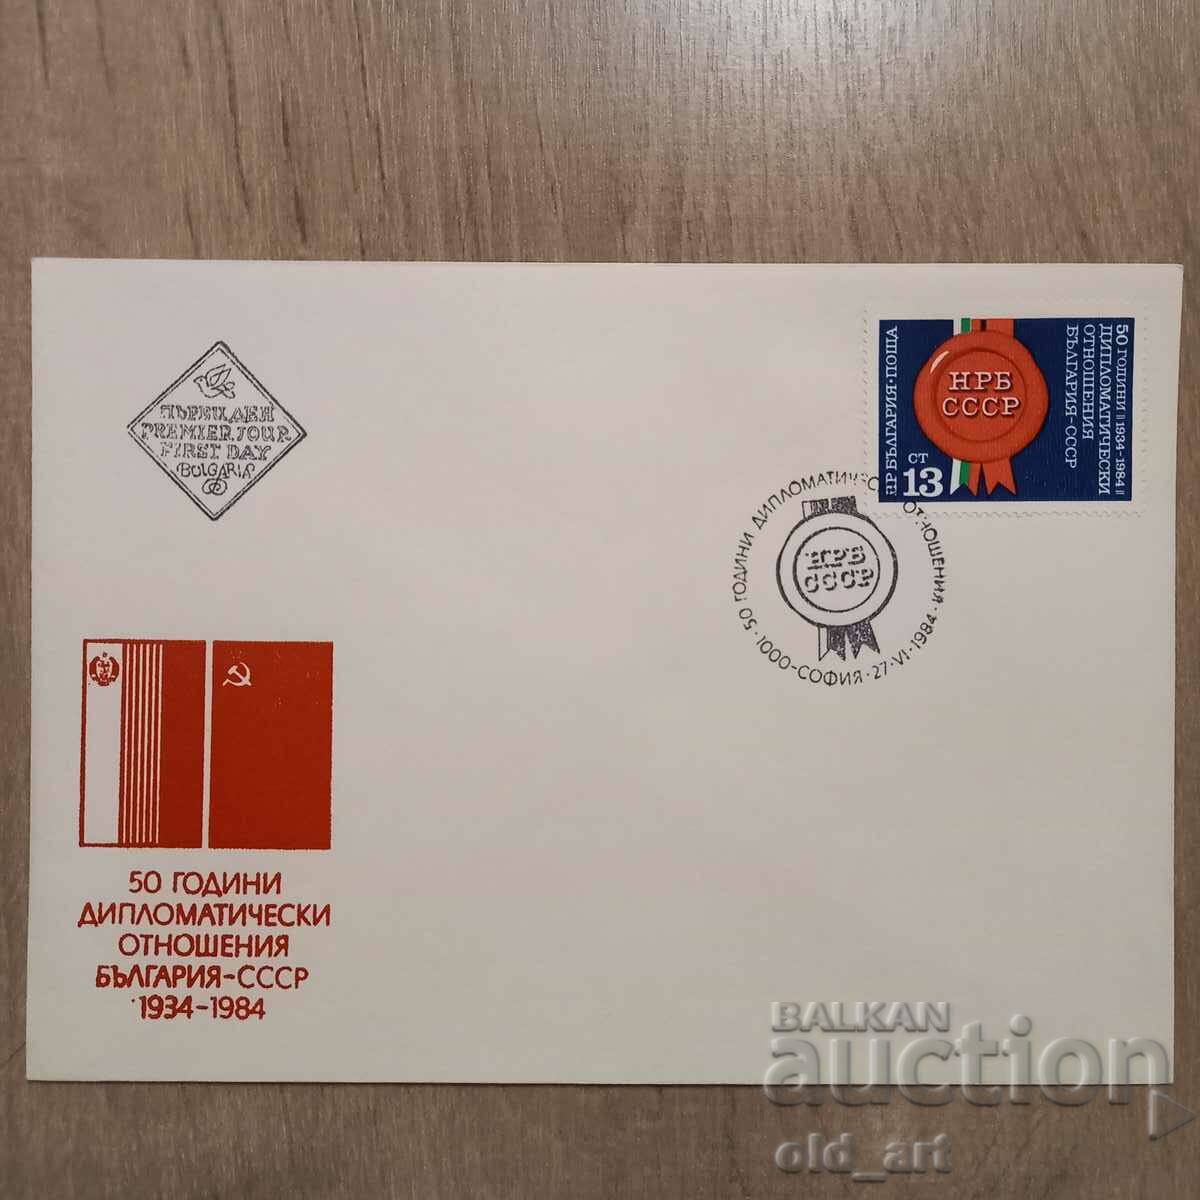 Postal envelope - 50 years diplomat. relations Bulgaria - USSR